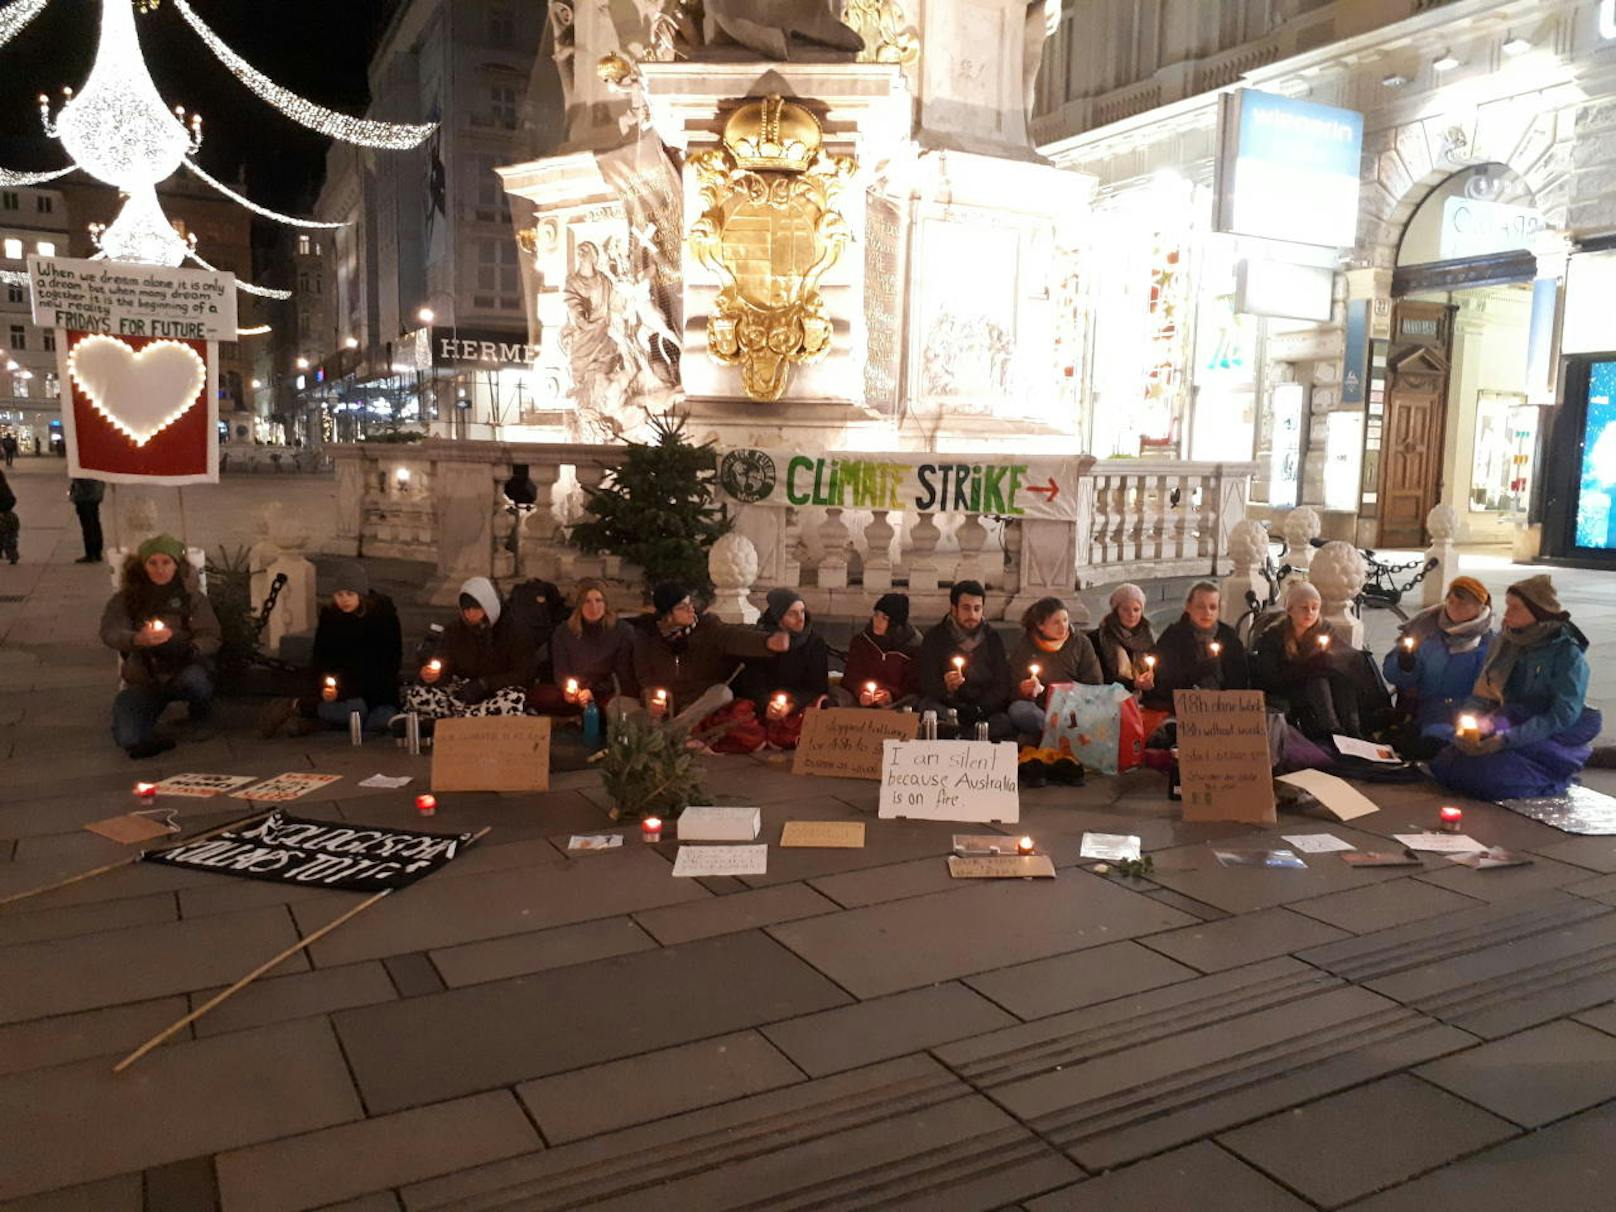 Fotos zeigen die schweigenden Klima-Aktivisten am Wiener Graben.